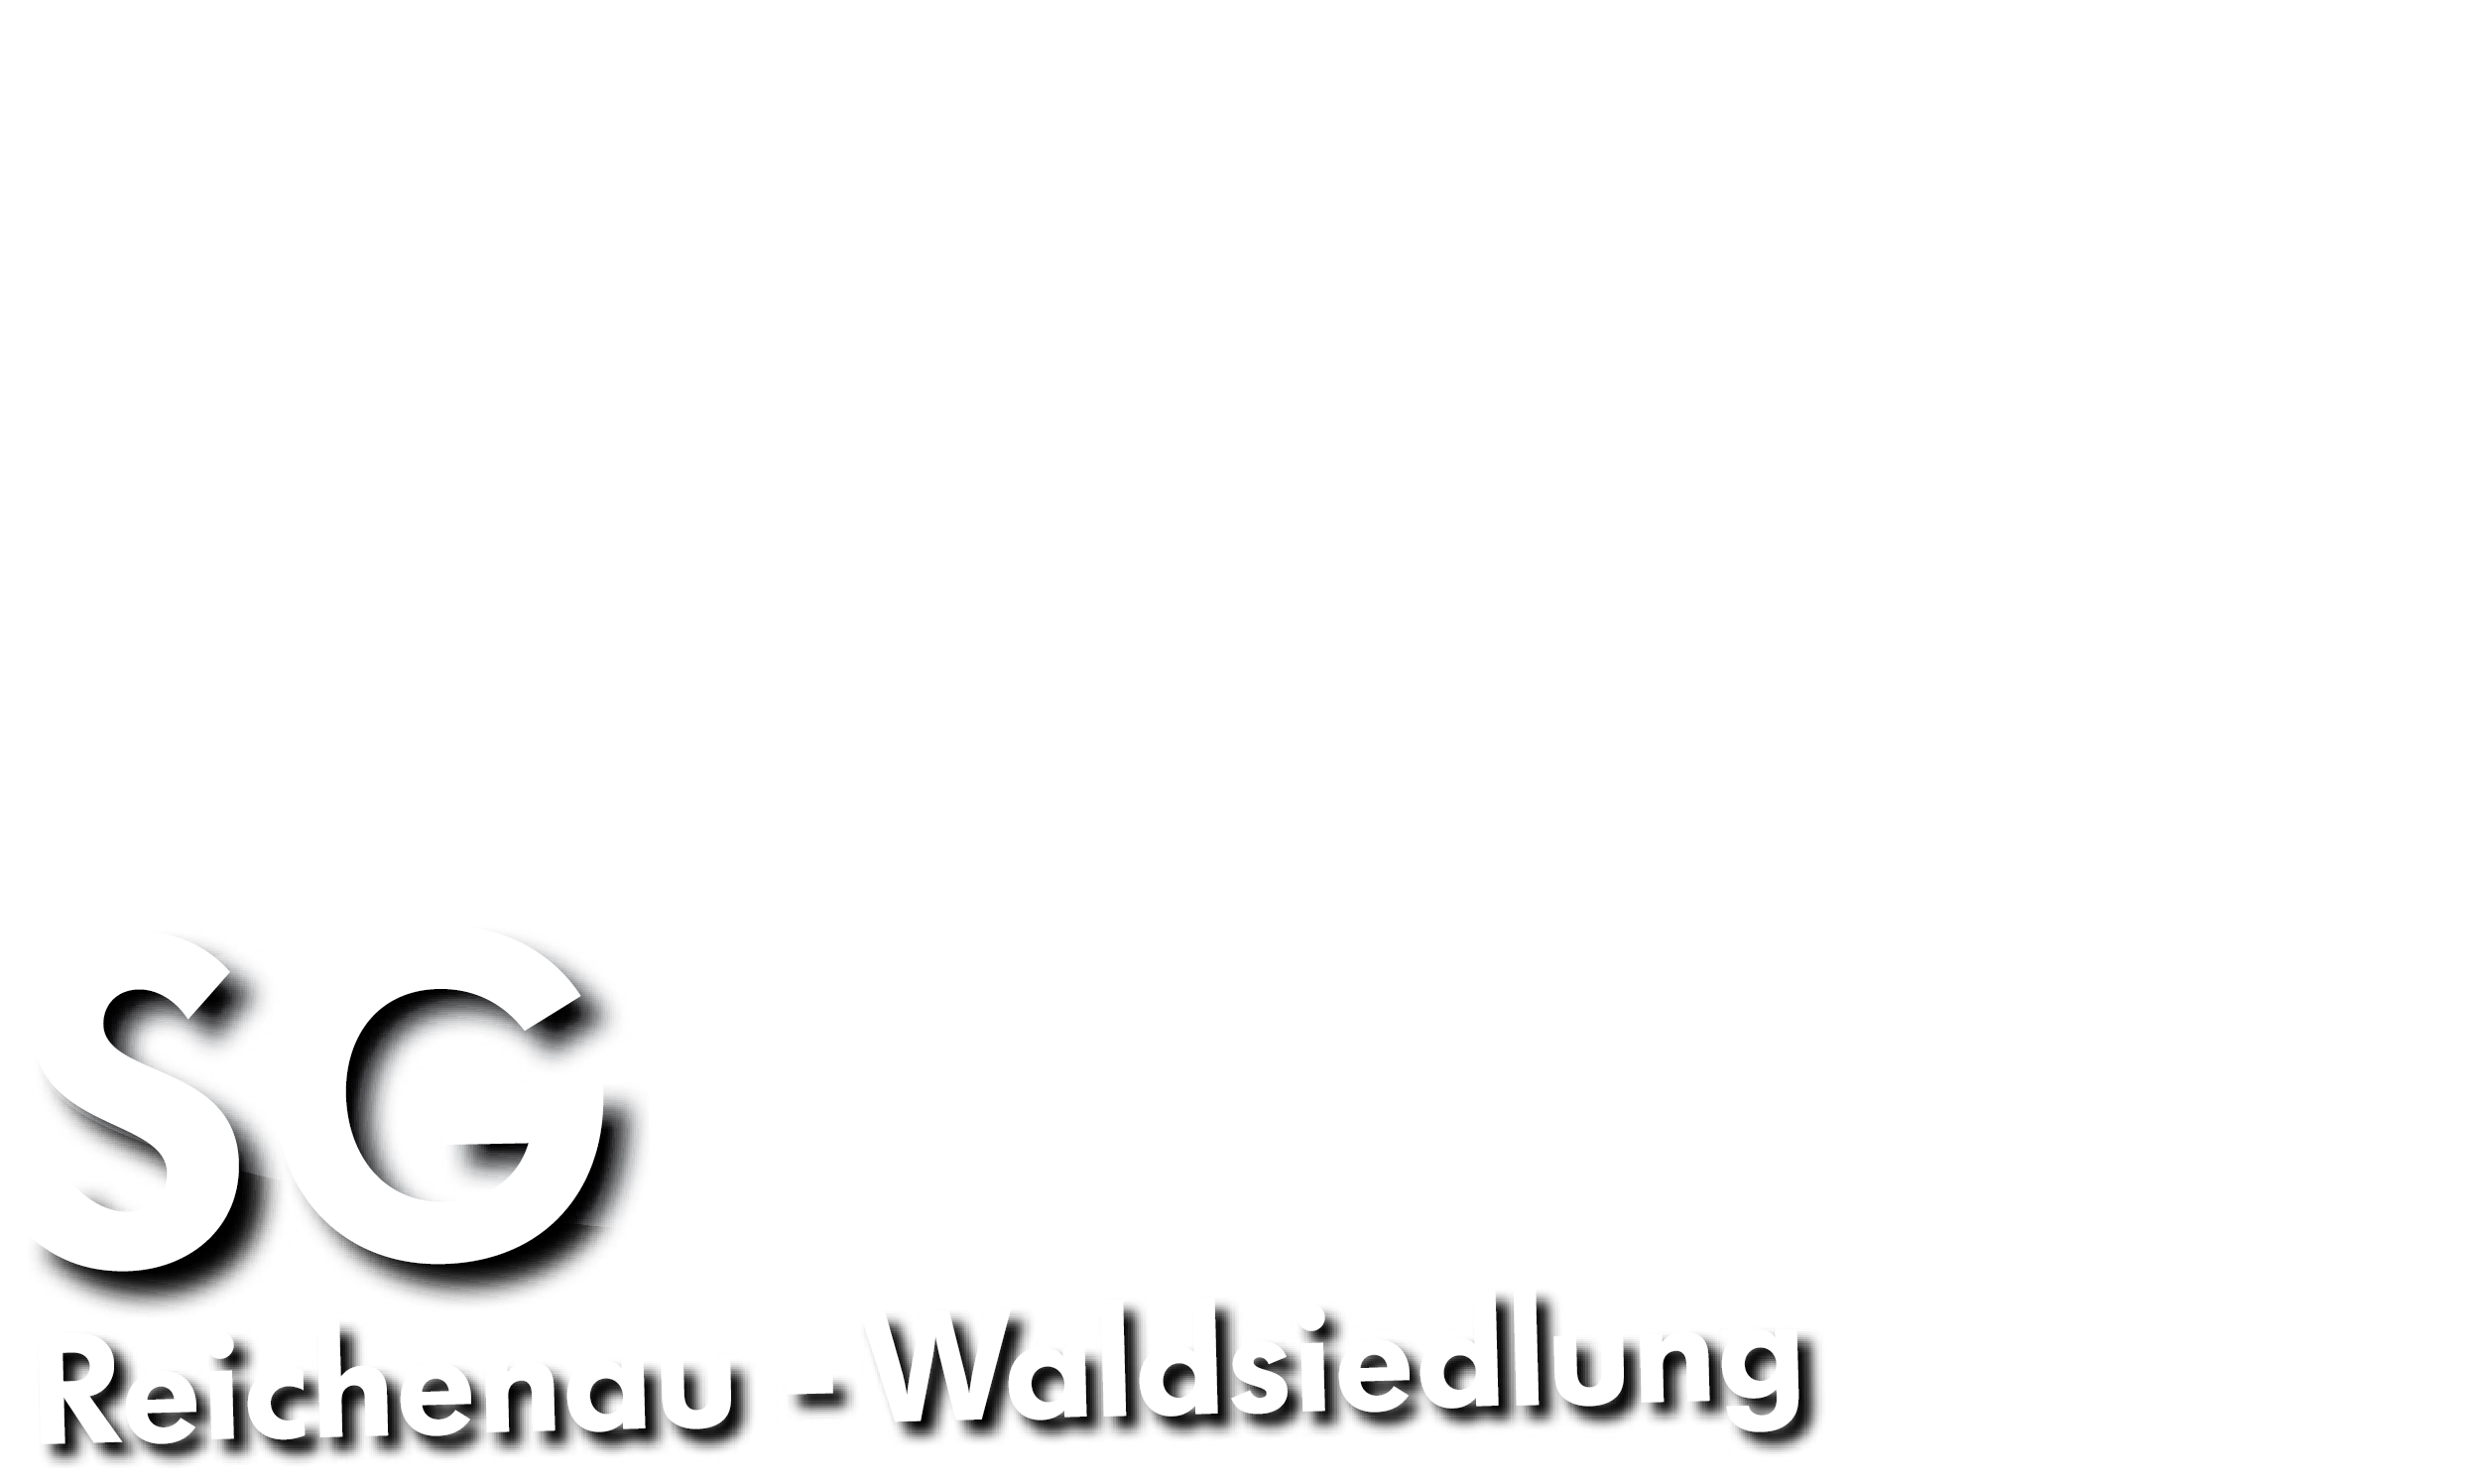 SG Reichenau-Waldsiedlung Logo